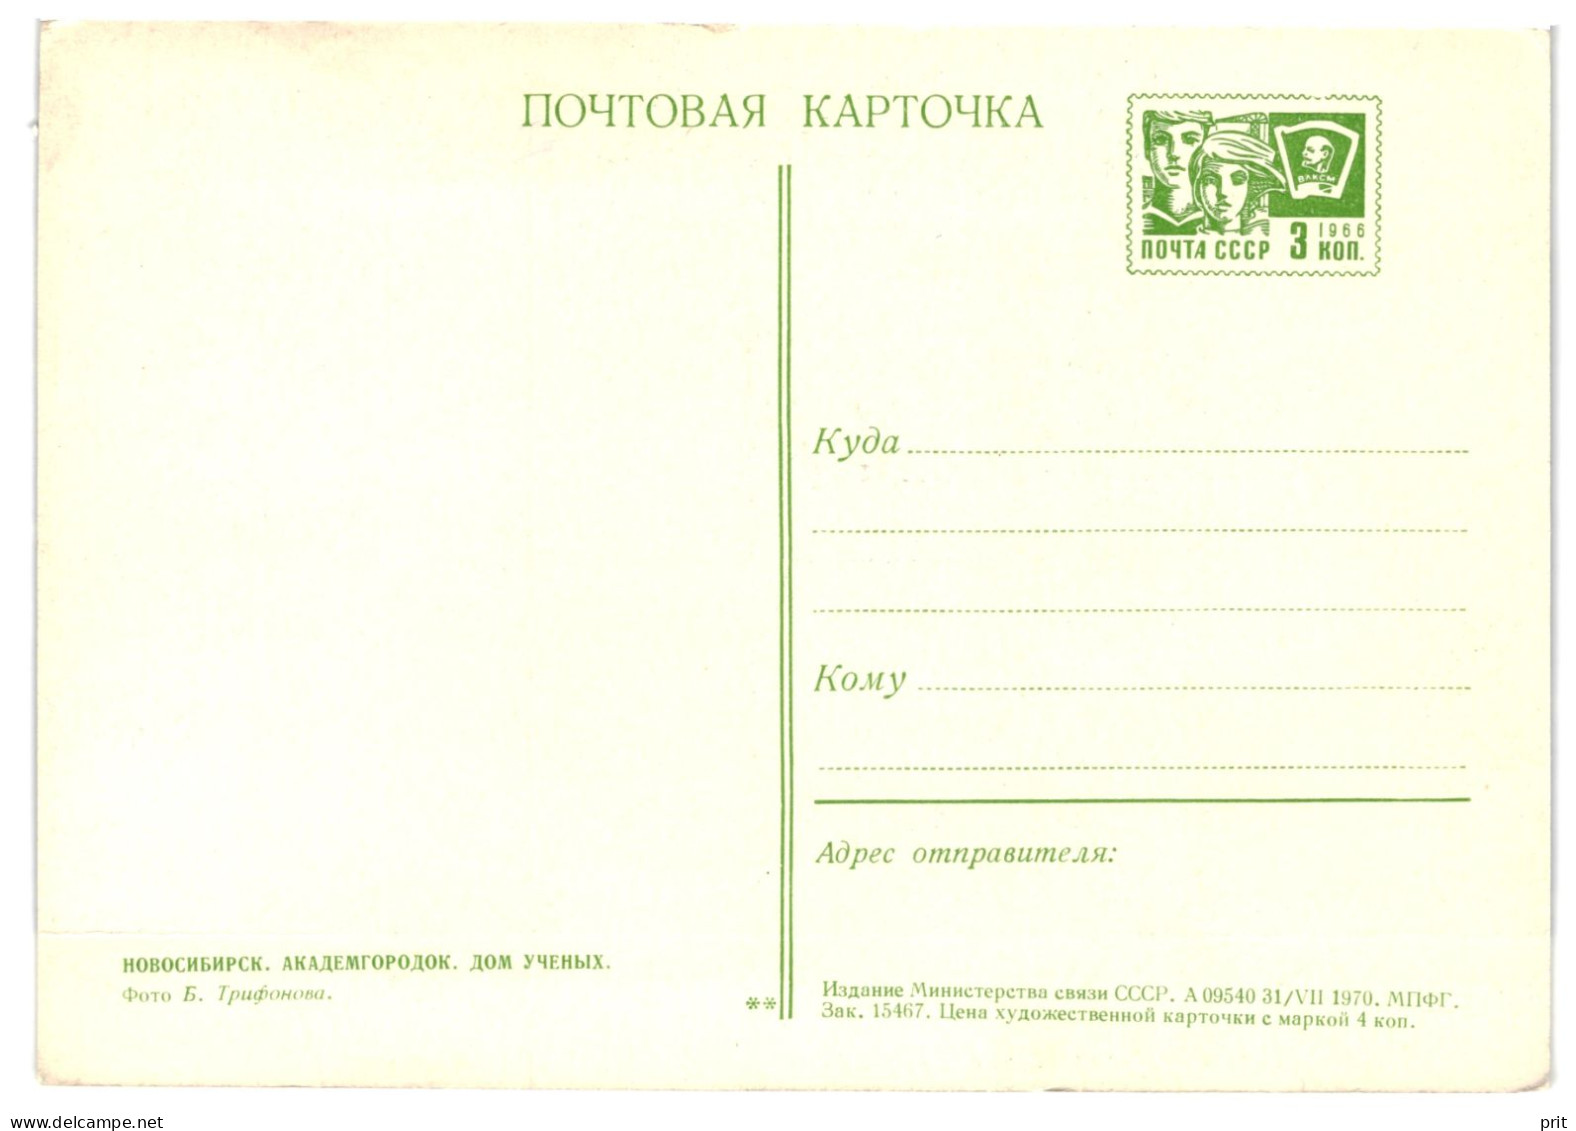 Academics Campus, Novosibirsk Siberia Soviet Russia USSR 1970 3Kop Postal Stationery Postcard Card Unused - 1970-79